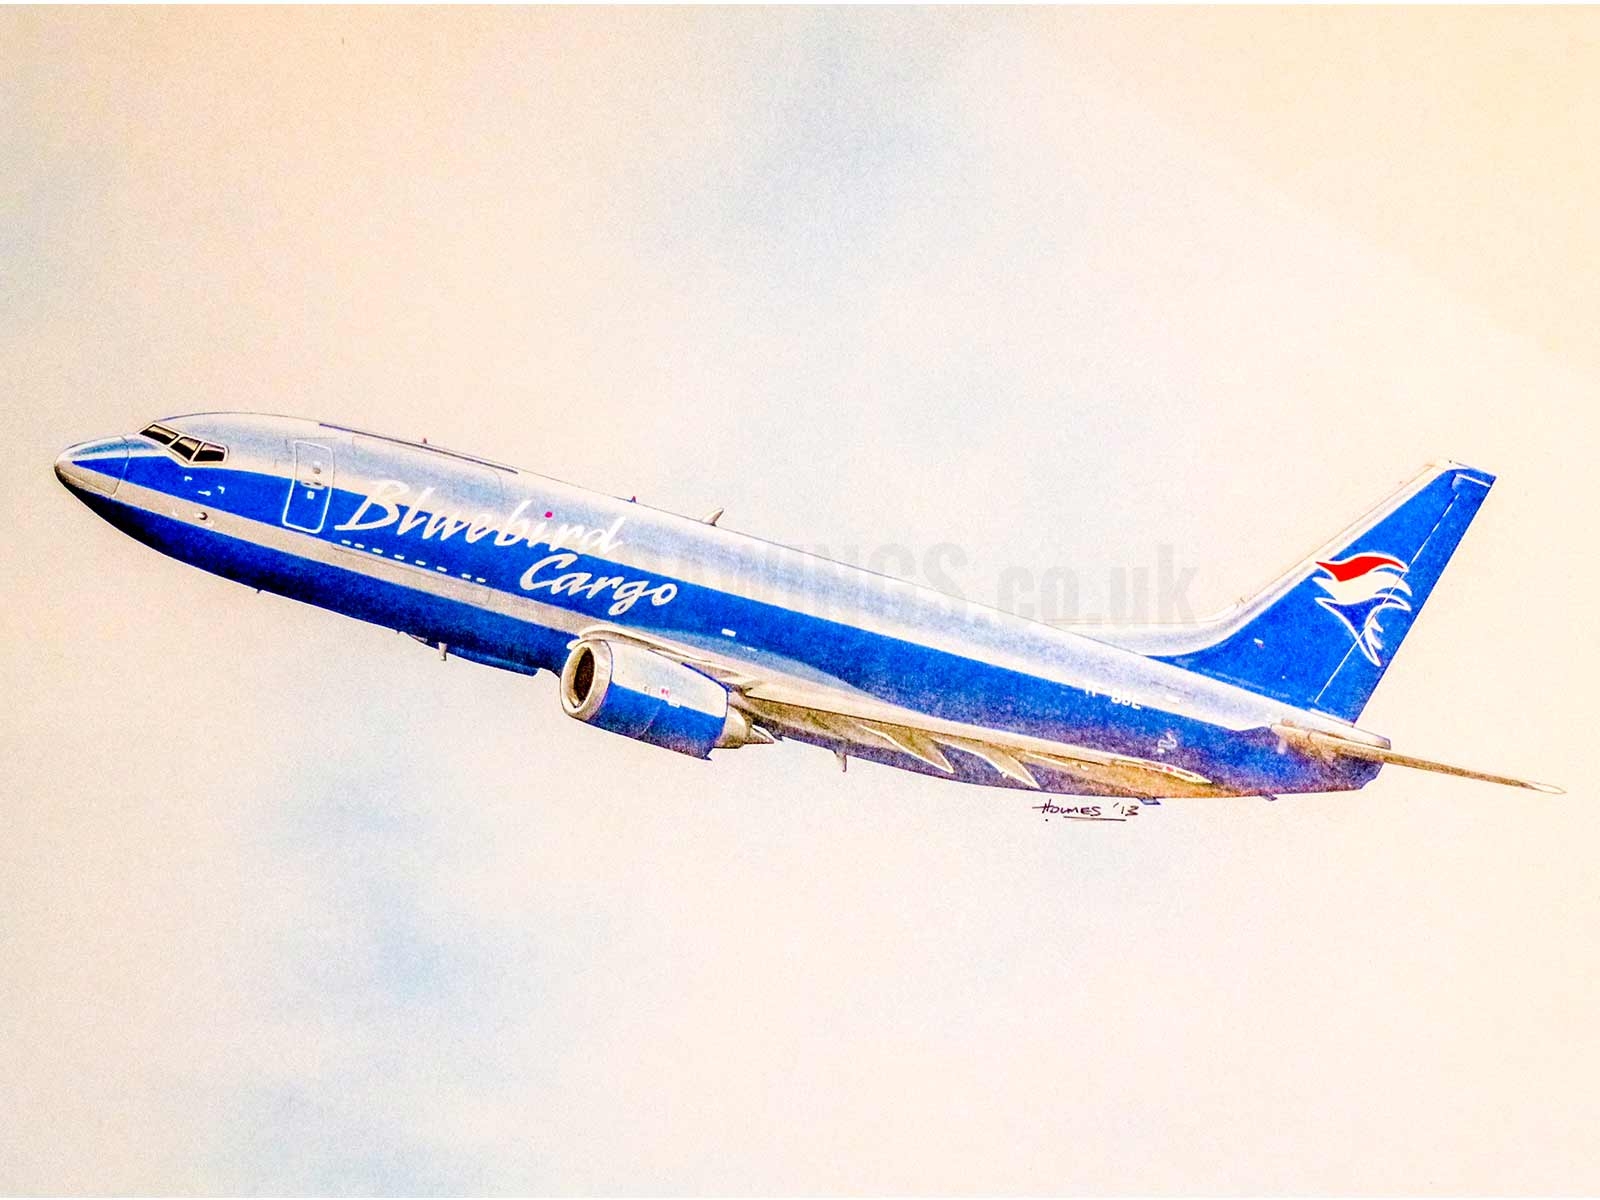 Bluebird Cargo Plane